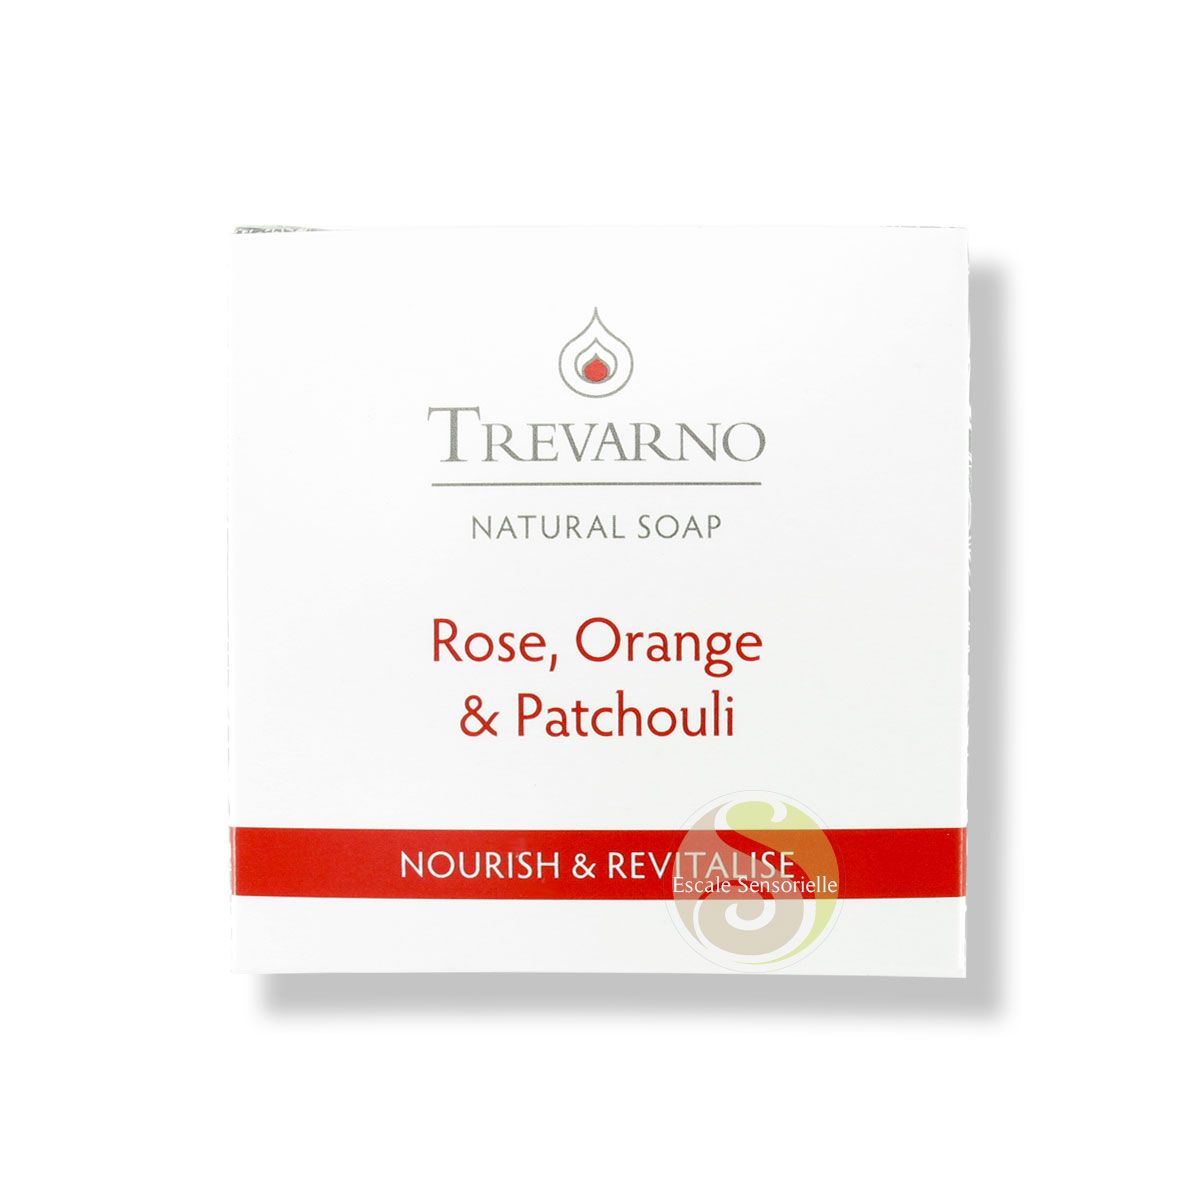 Savon rose orange patchouli nourrit revitalise la peau Trevano naturel